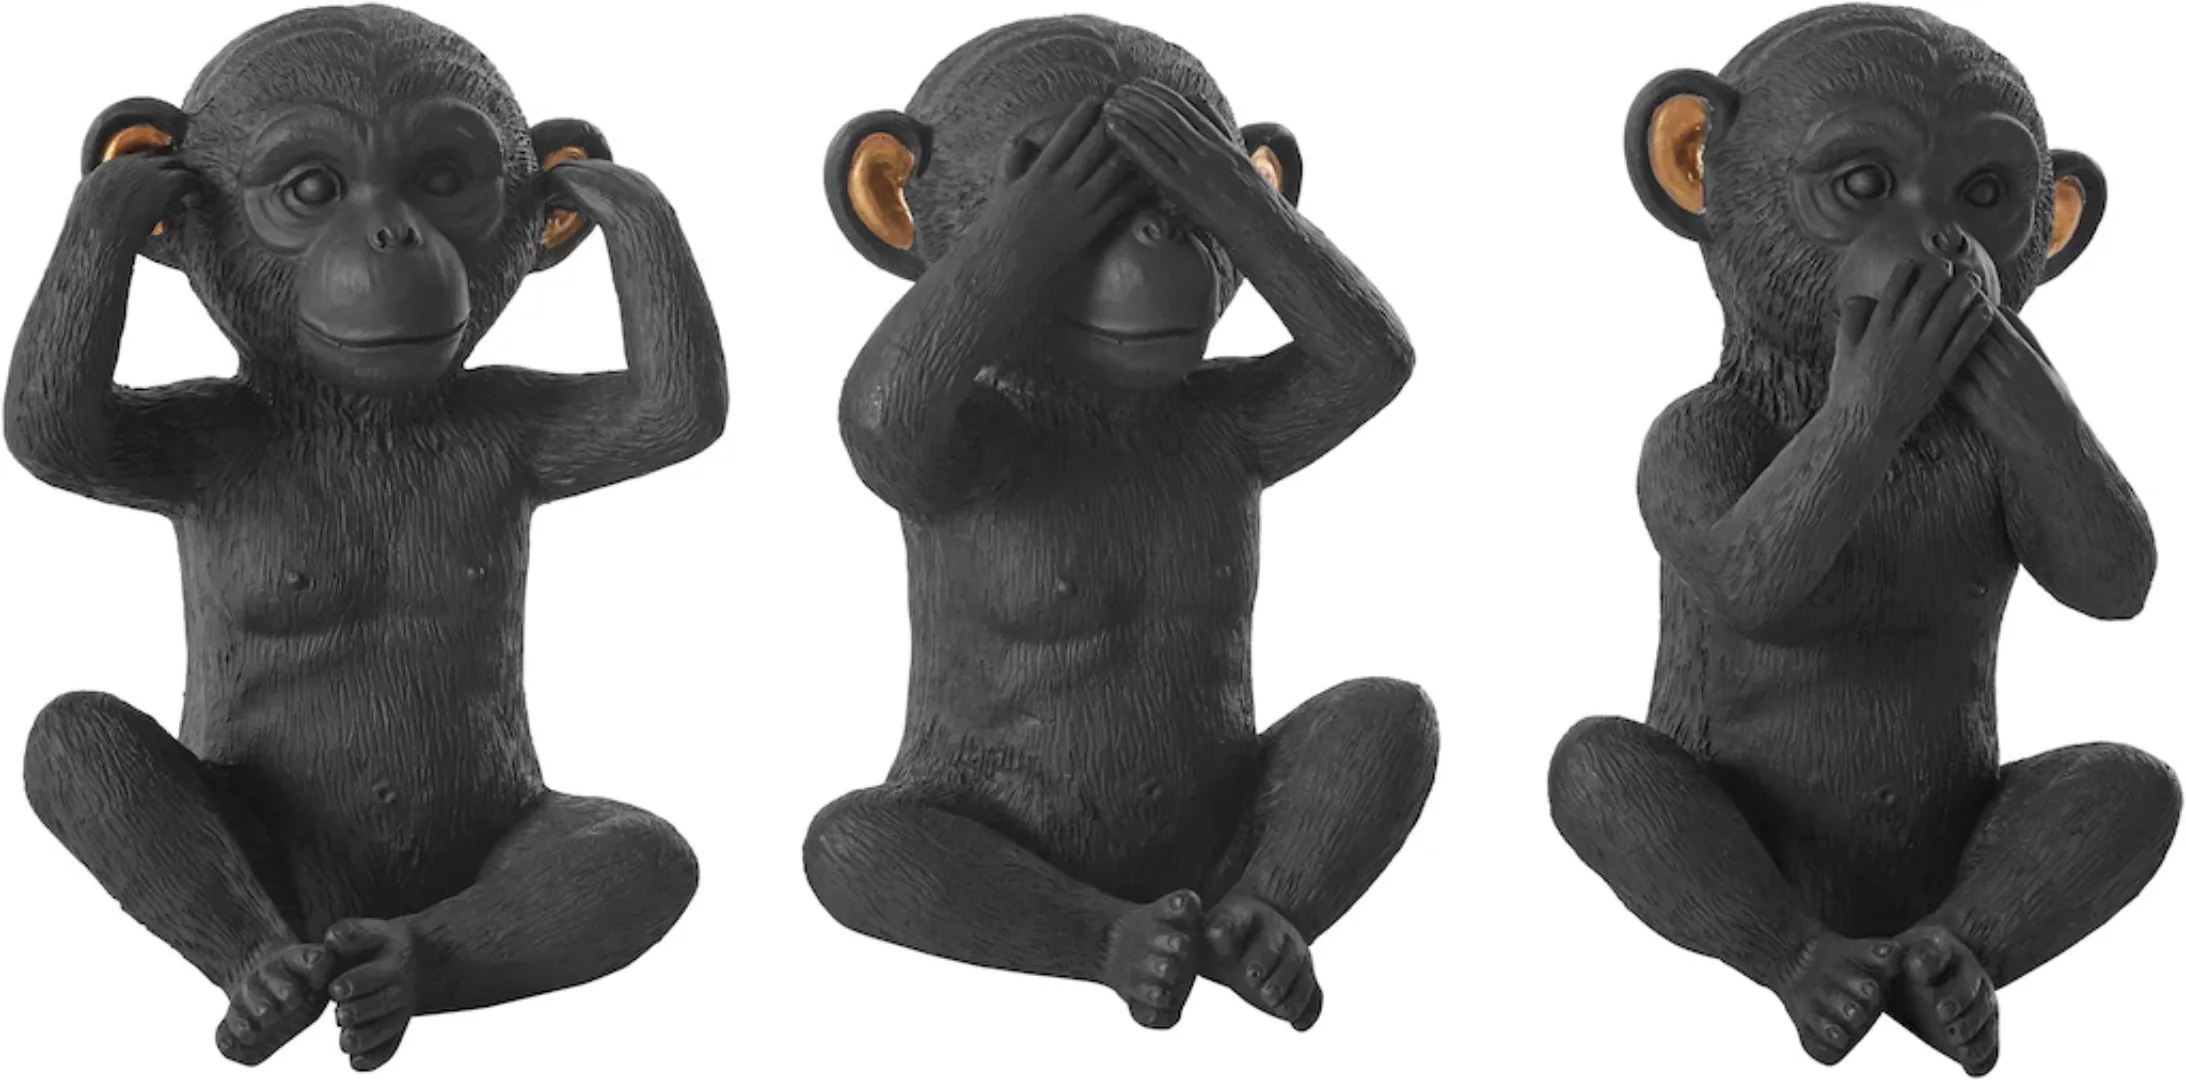 Leonique Dekofigur "Affen" günstig online kaufen